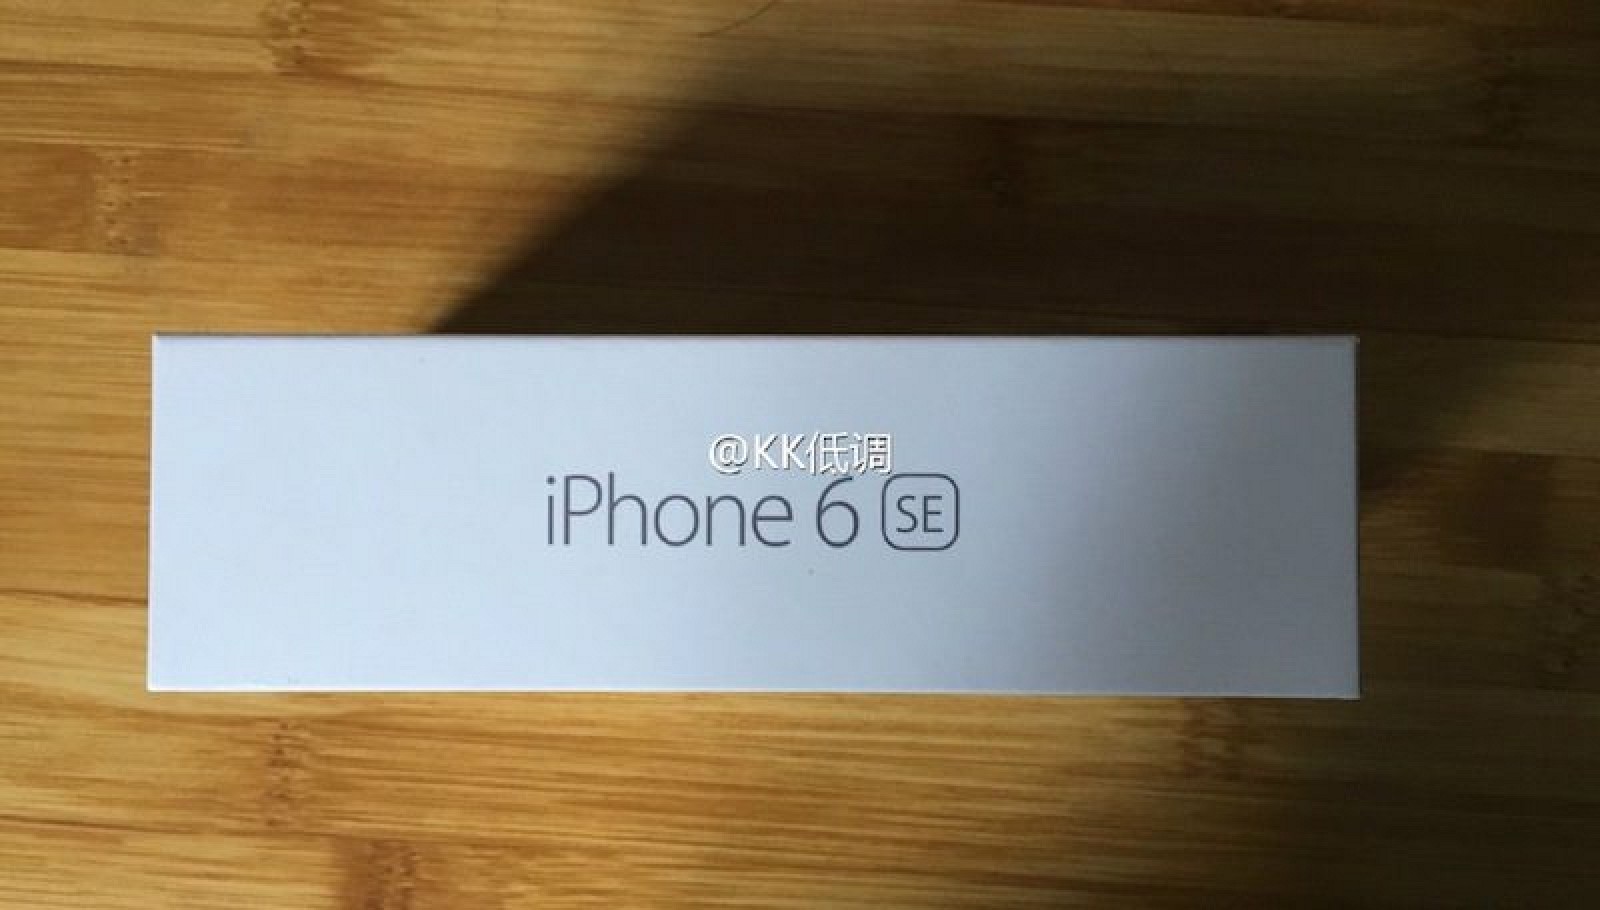 iPhone-6se-package-1-800x455.jpg